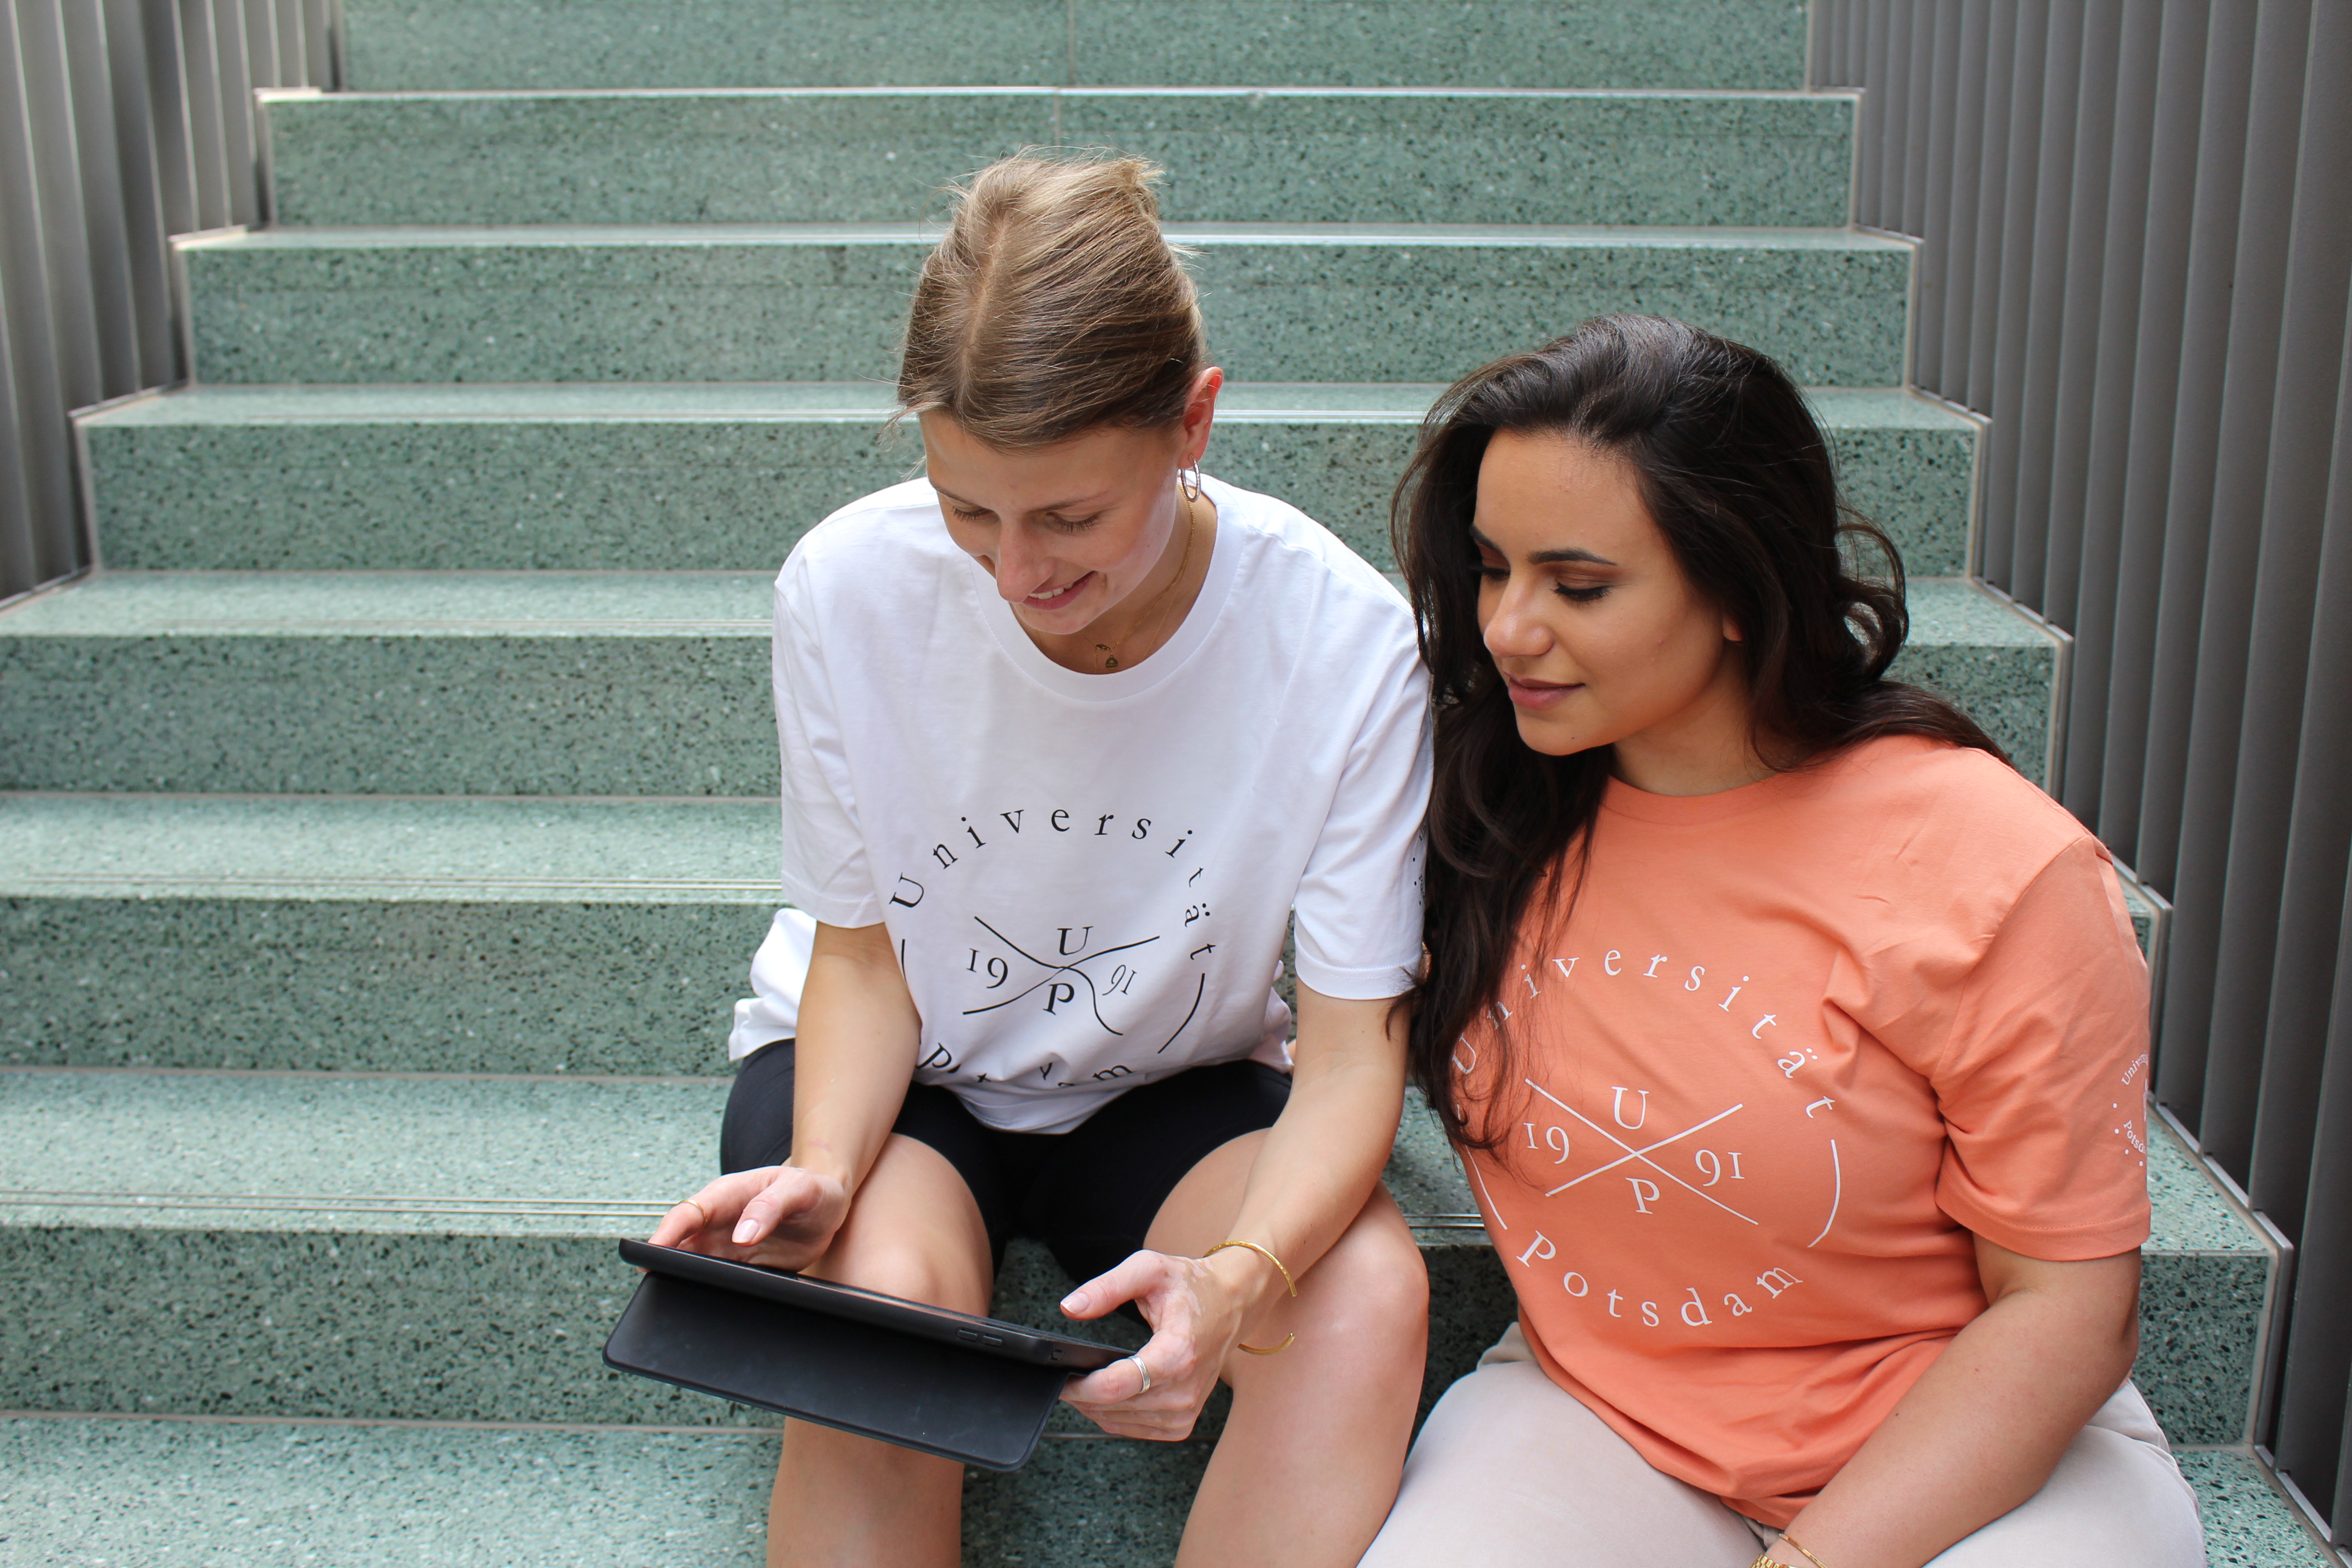 Styler T-shirts. Abgebildet sind zwei junge Frauen, die auf einer Treppe sitzen. Die Frau links trägt ein weißes Styler T-shirt. Die Frau rechts von ihr ein orange farbenes Styler T-shirt.